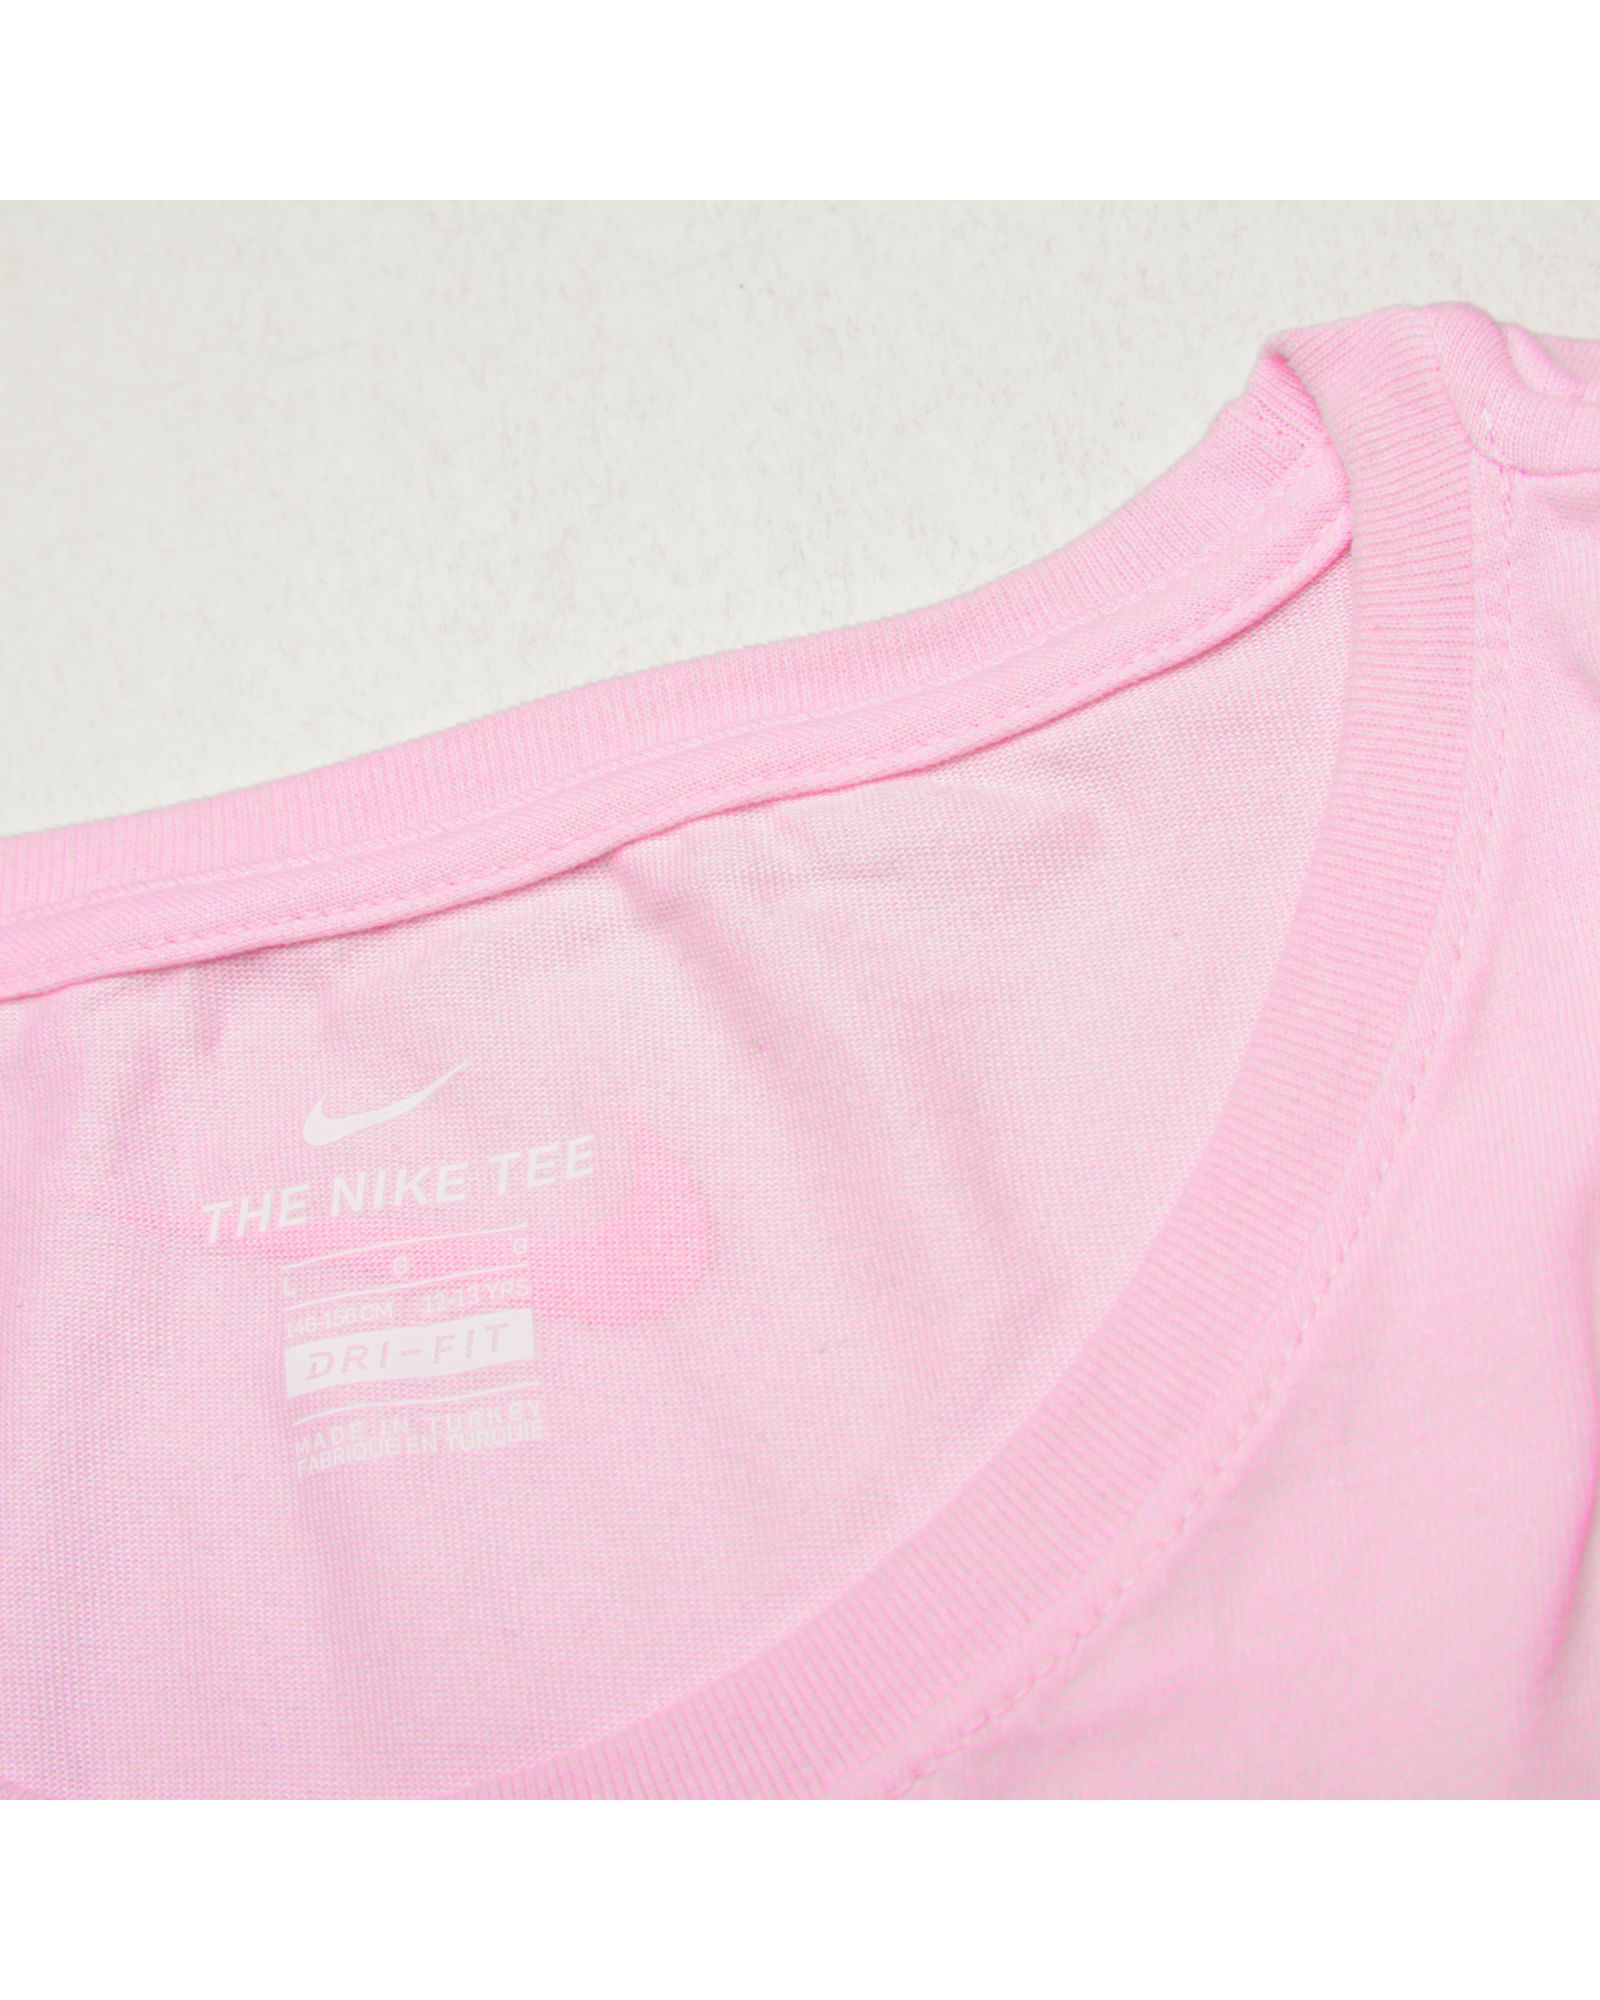 Camiseta de Training Dri-FIT Junior Rosa - Fútbol Factory